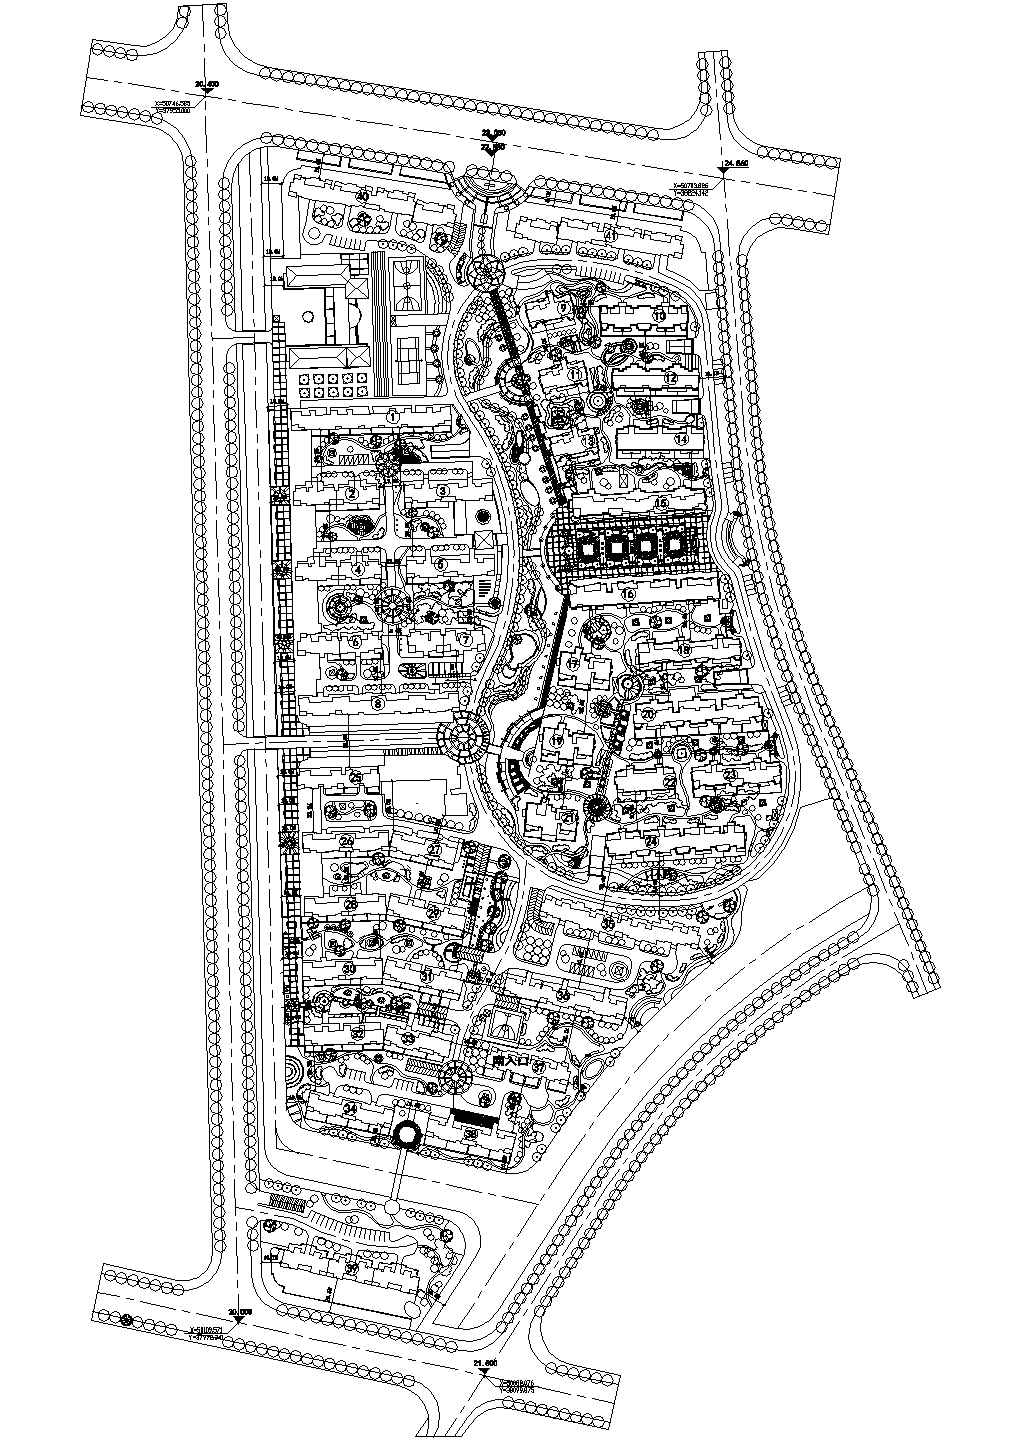 某发达地区高级小区绿化方案规划设计施工CAD图纸